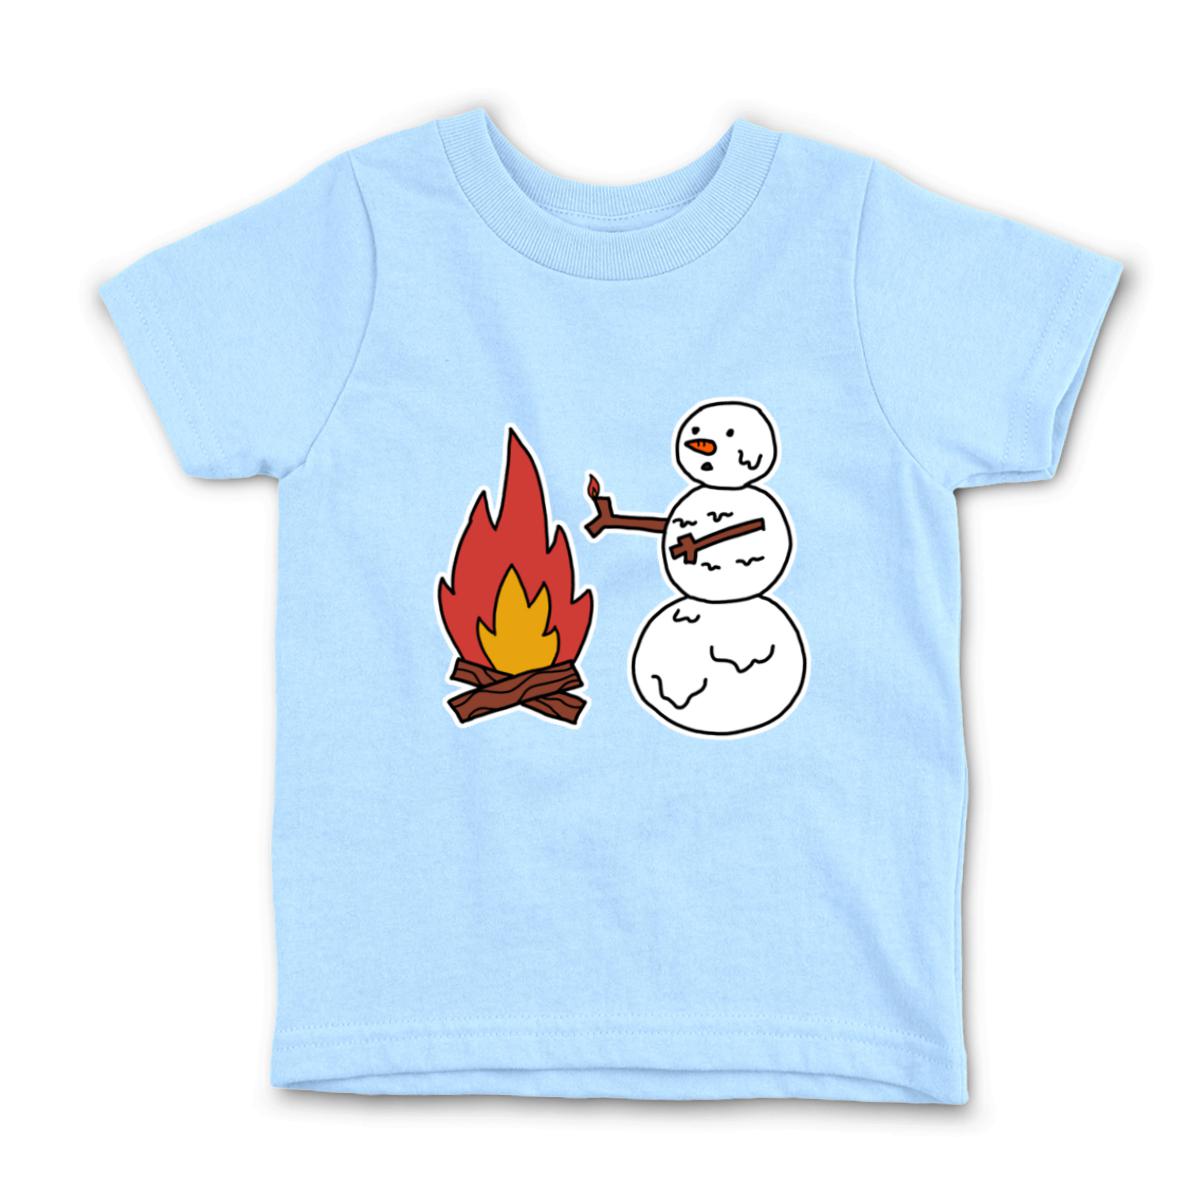 Snowman Keeping Warm Kid's Tee Small light-blue